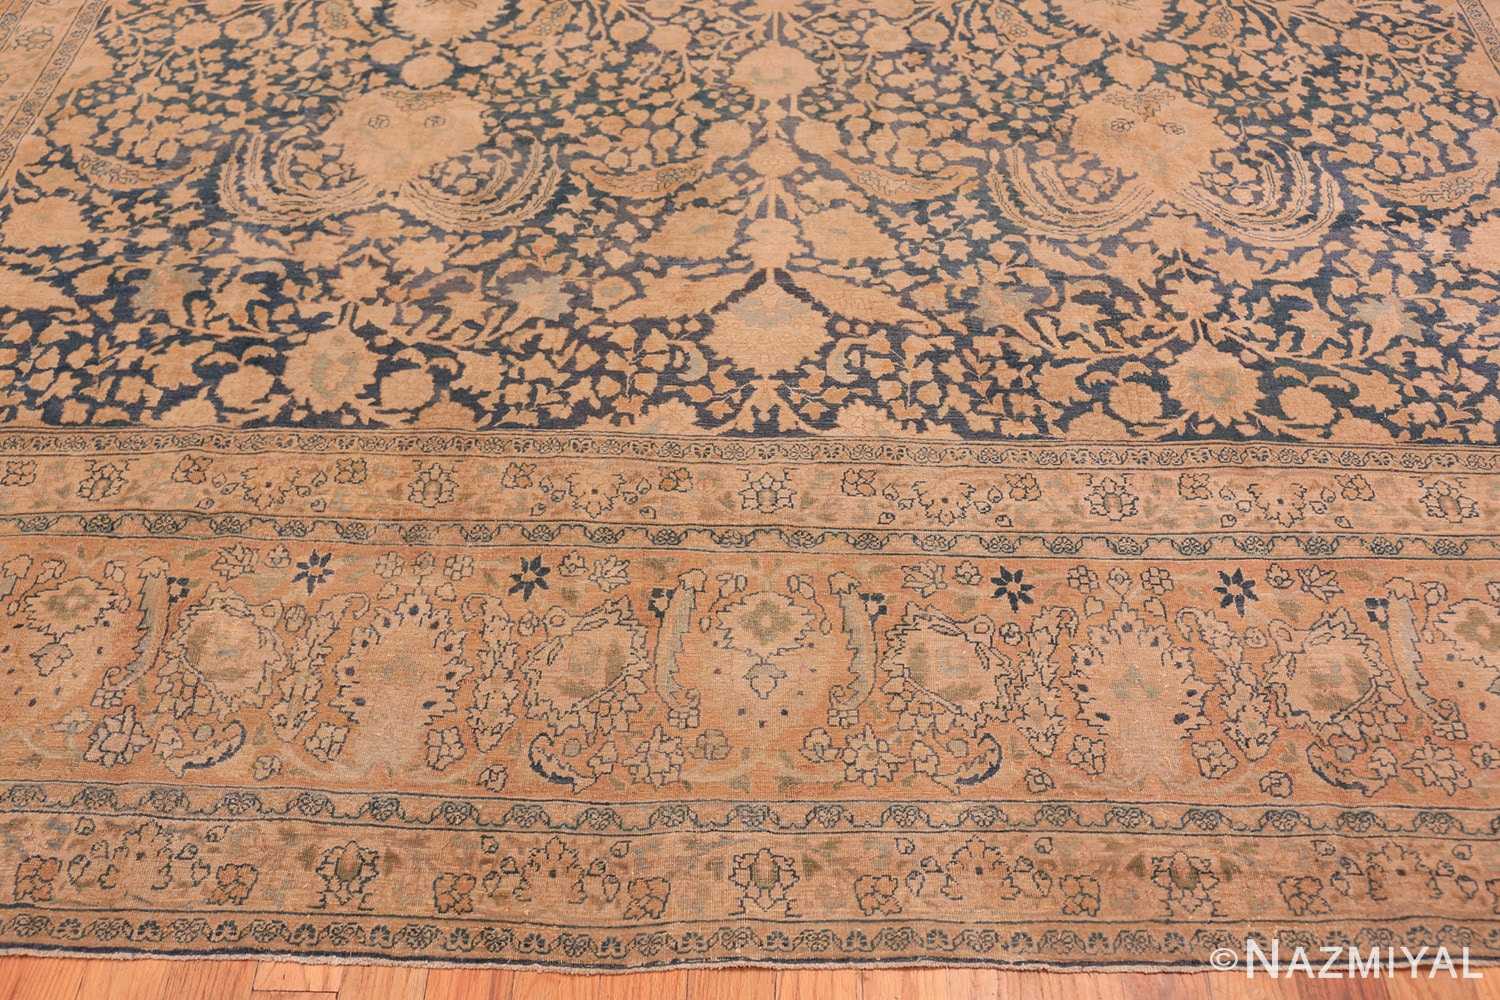 Border Antique Persian Khorassan rug 49545 by Nazmiyal